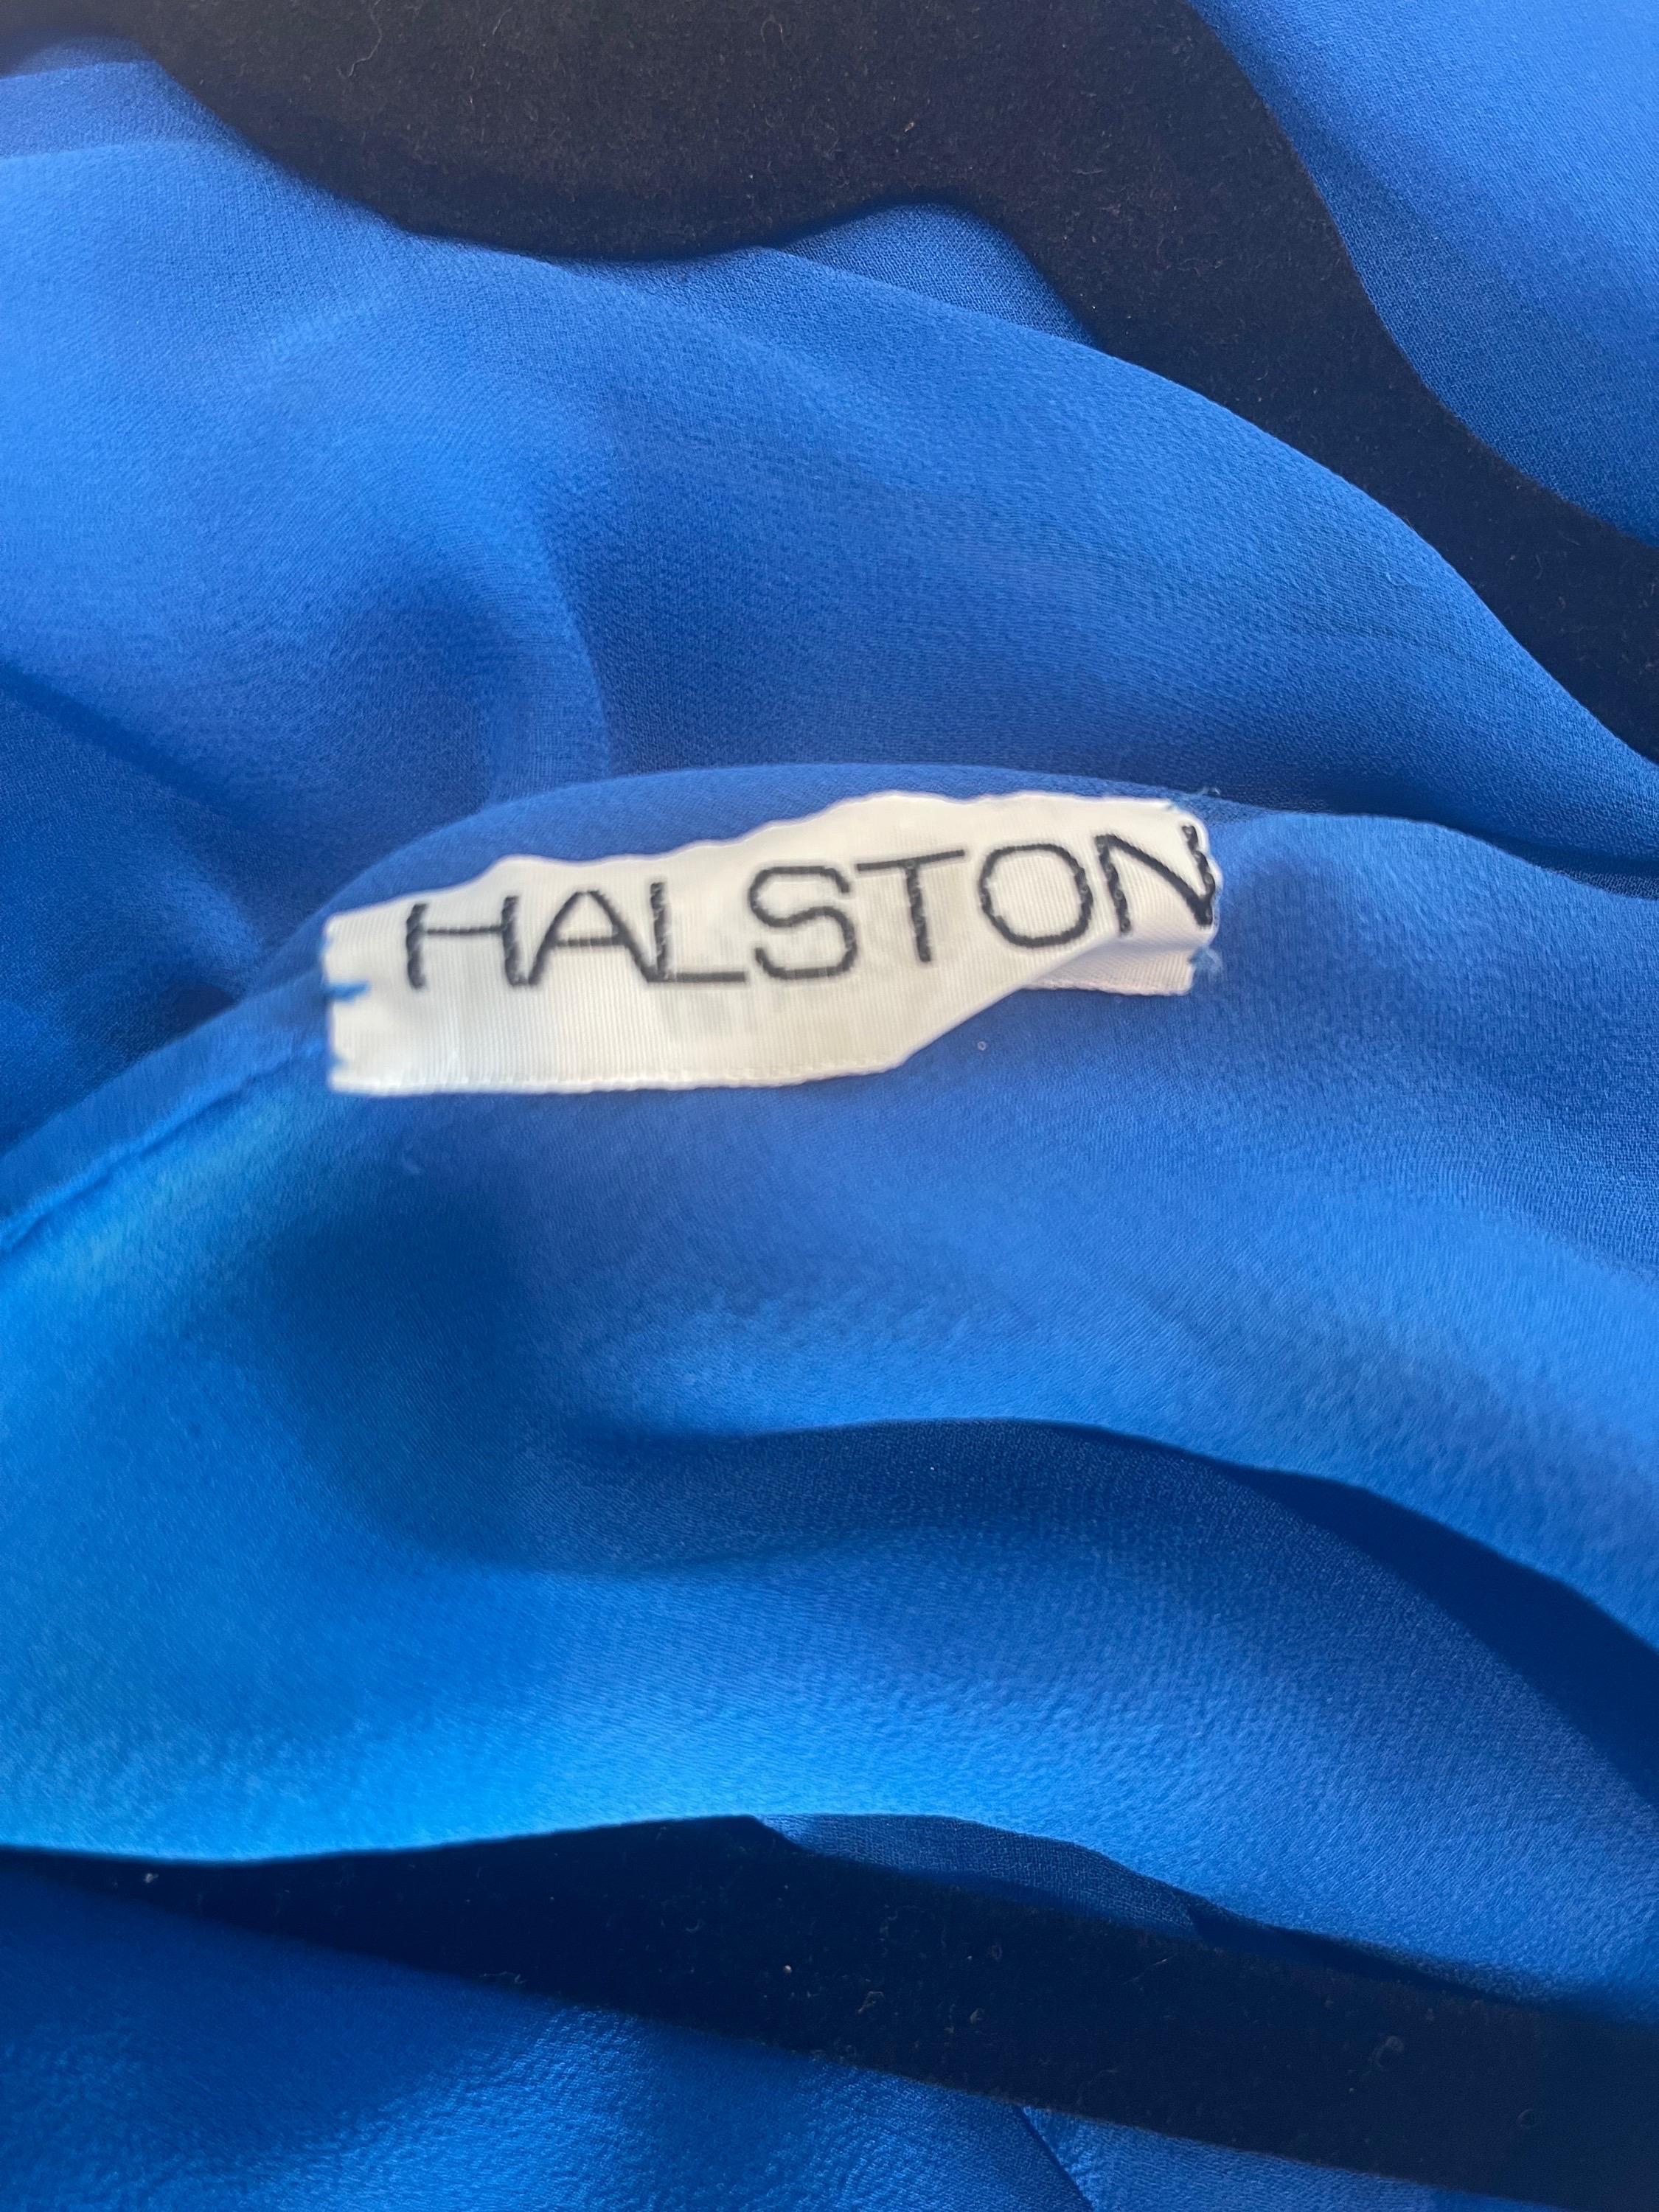 Wunderschöne Vintage 70s HALSTON Couture cerulean blau Seide Chiffon Göttin Kleid ! Wird einfach über den Kopf gestülpt. Es besteht aus mehreren Lagen feinstem Seidenchiffon, der mit dem Wind und der Bewegung fließt. Ein kultiges, museumswürdiges